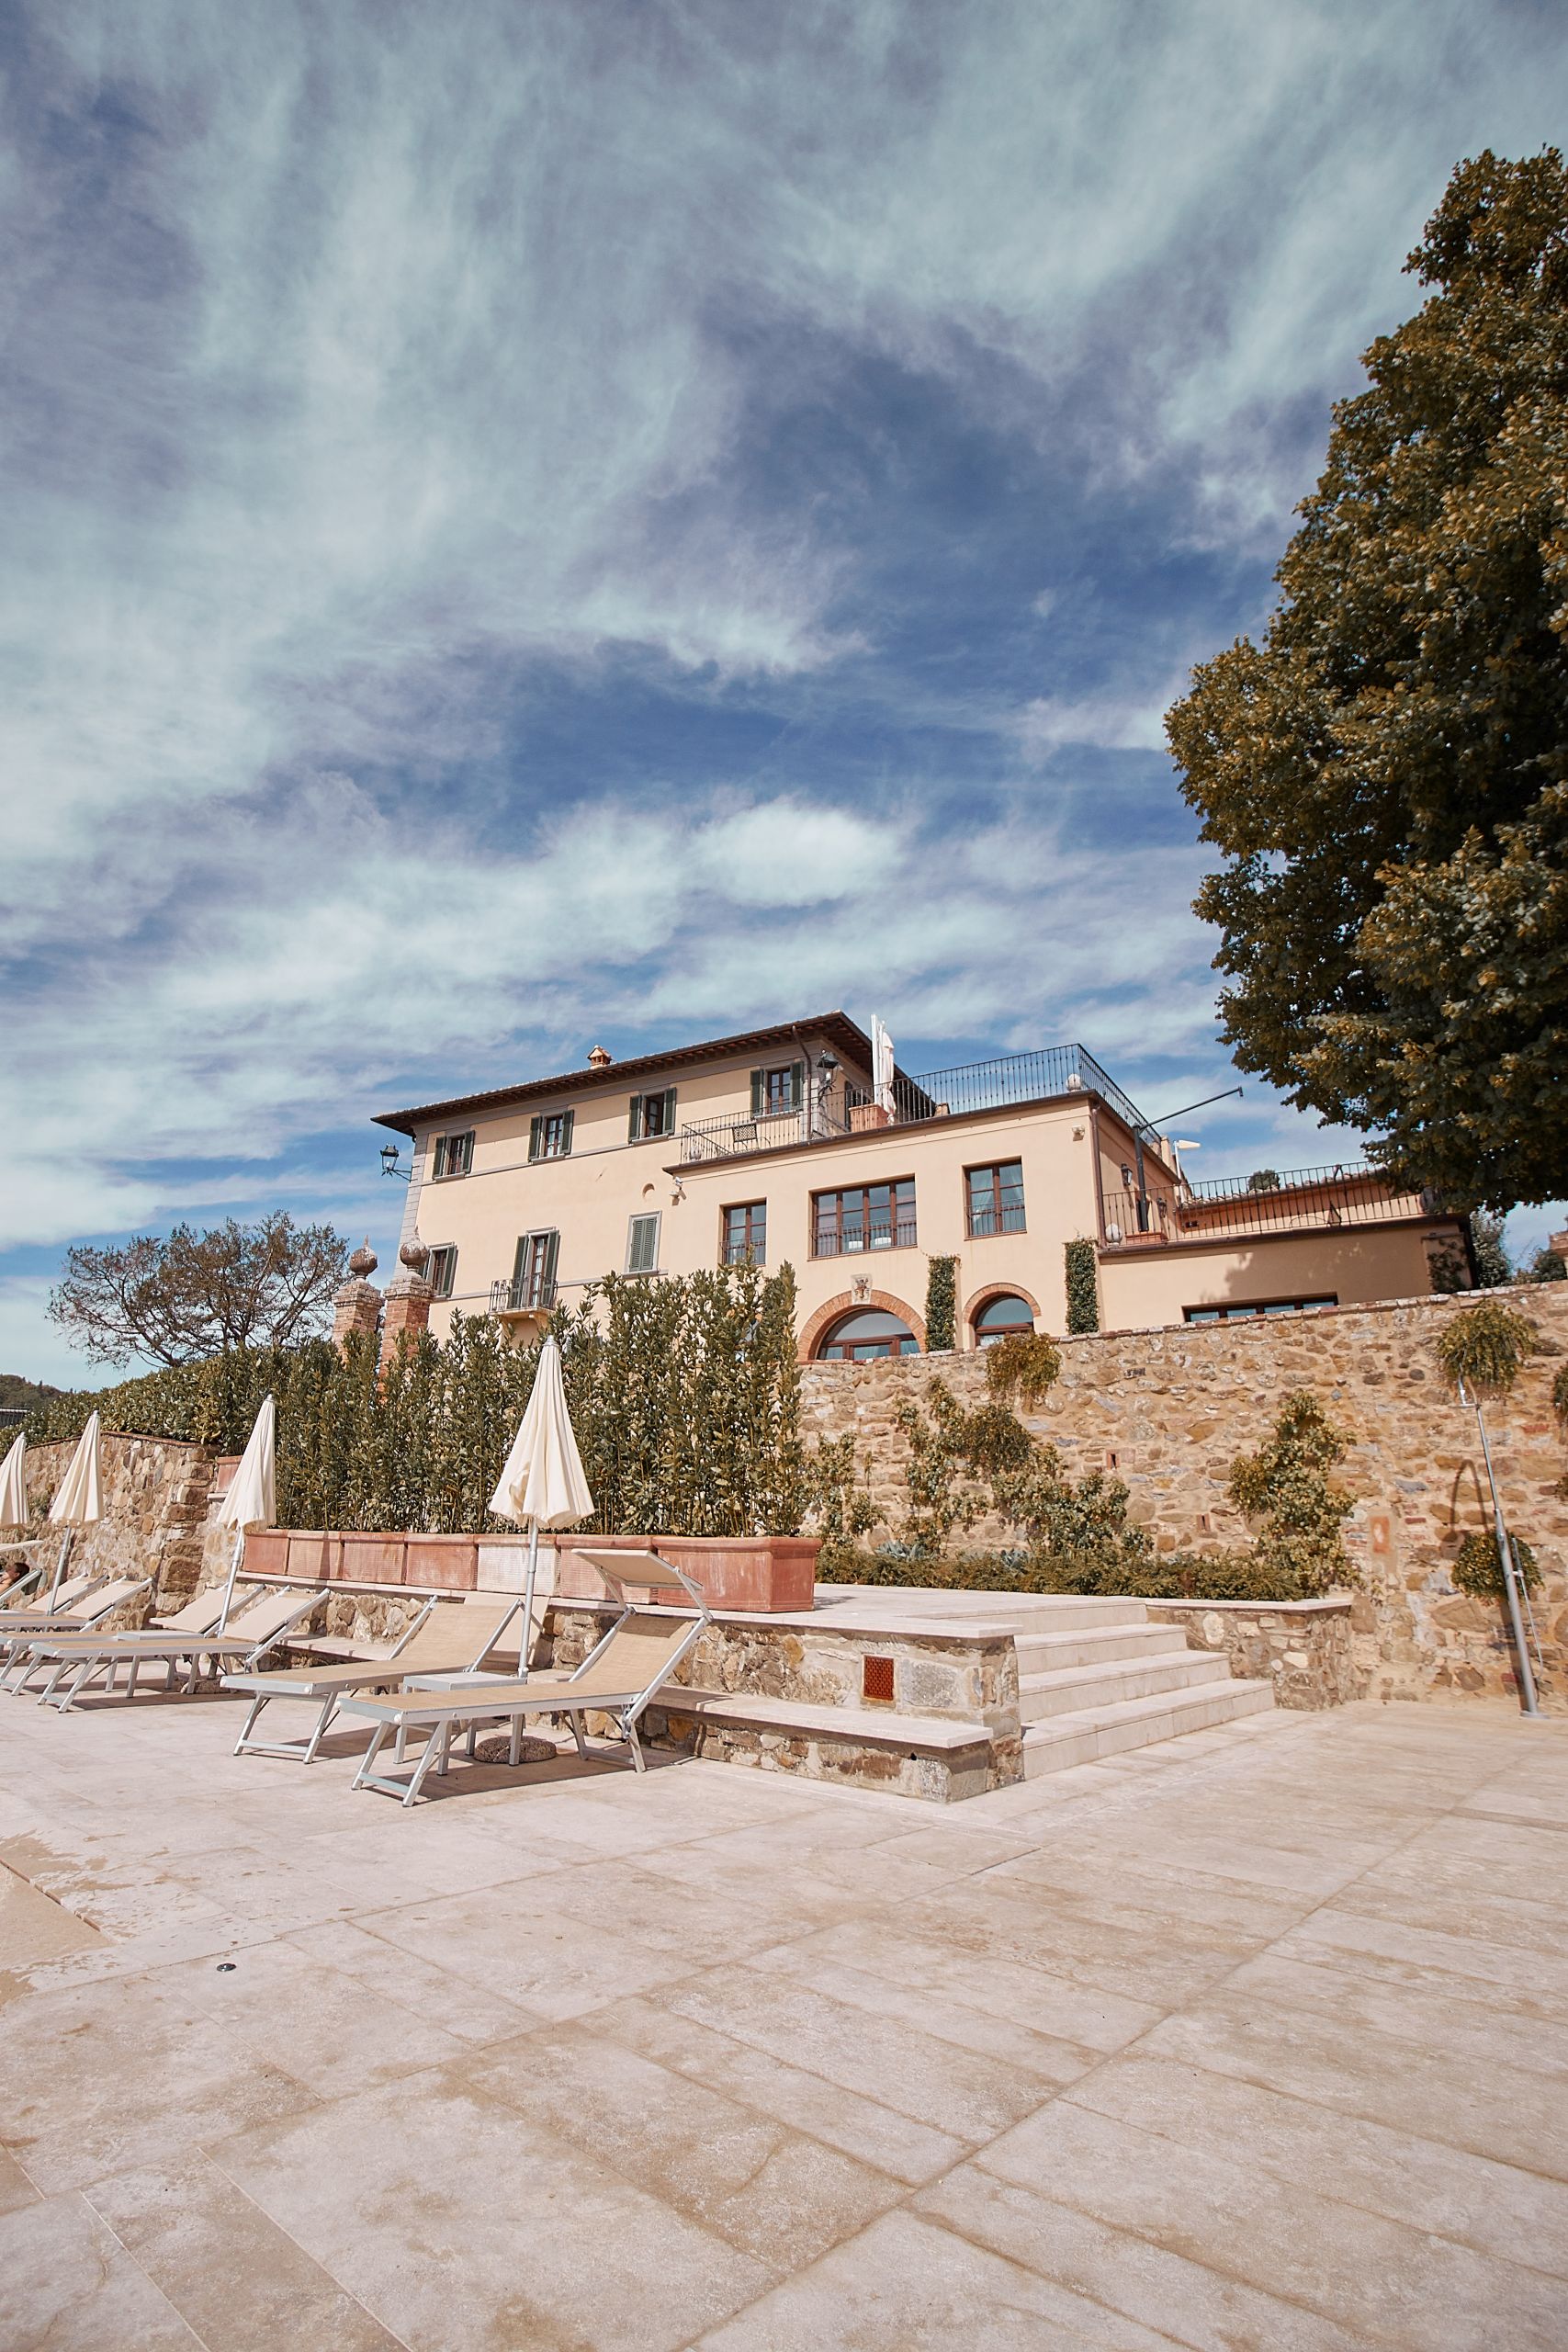 Dievole Wine Resort in Siena als Unterkunft vom Toskana Roadtrip